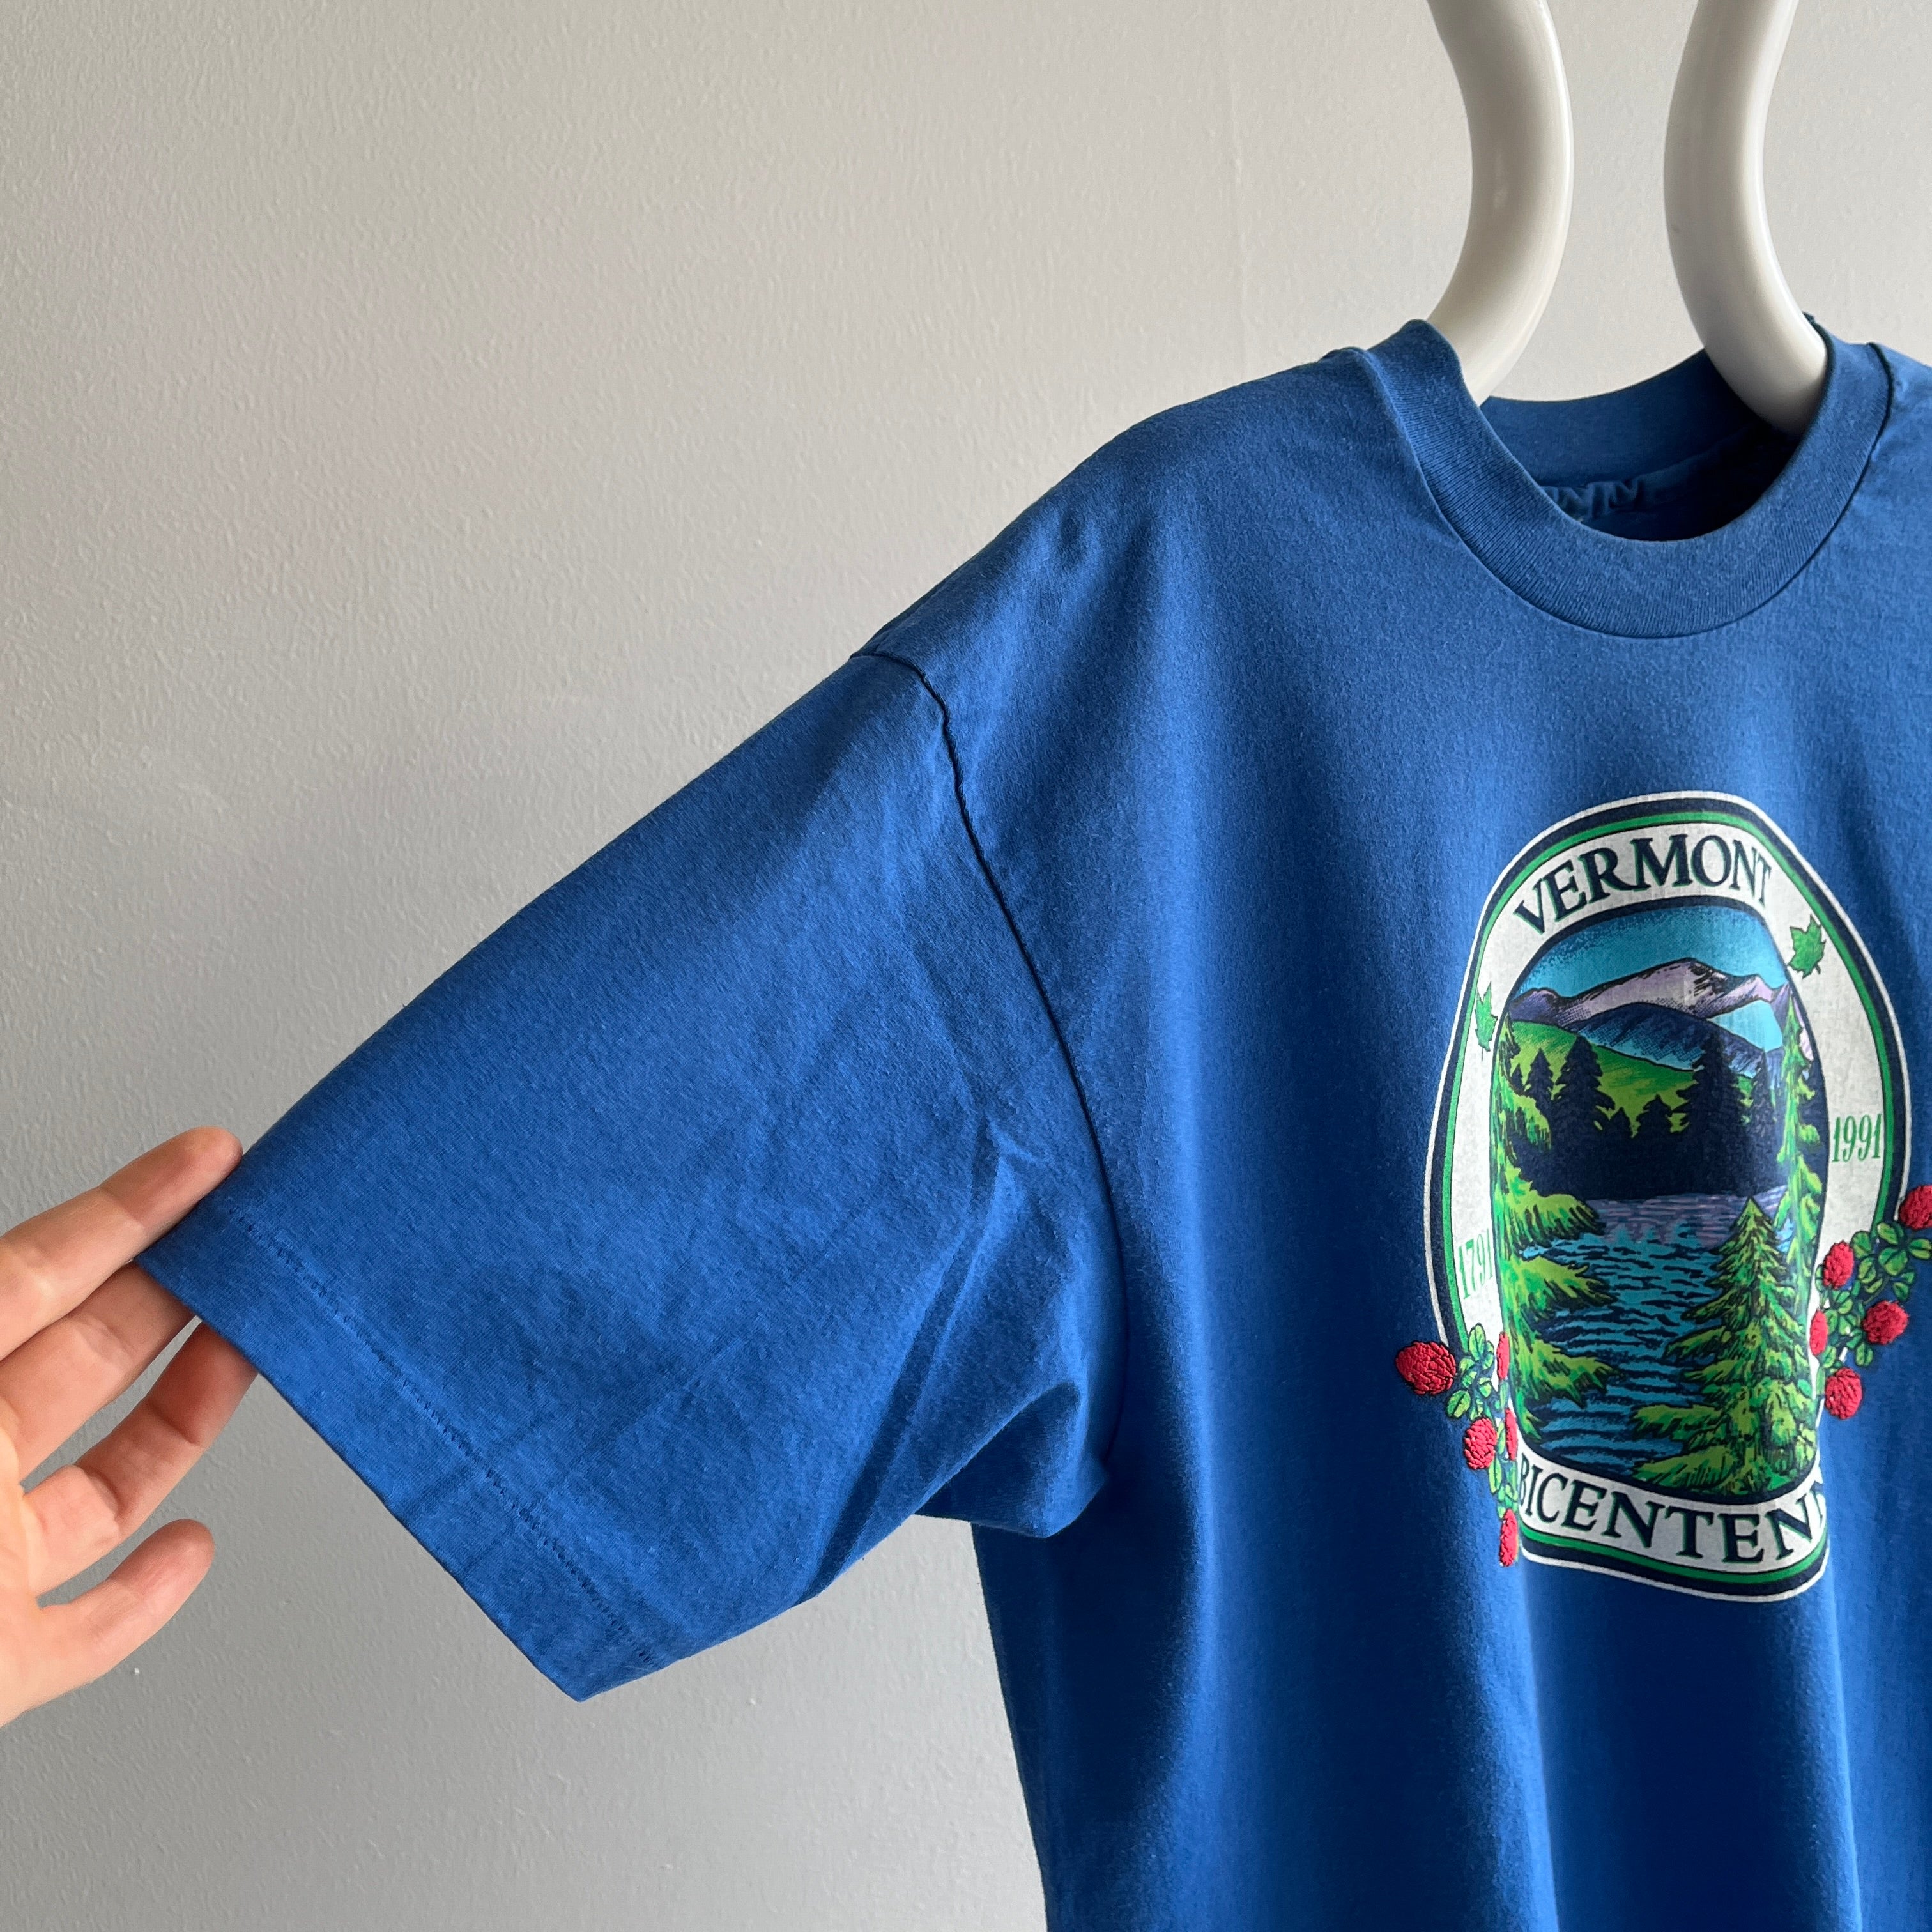 1990-1991 Vermont Bicentennial Tourist T-Shirt